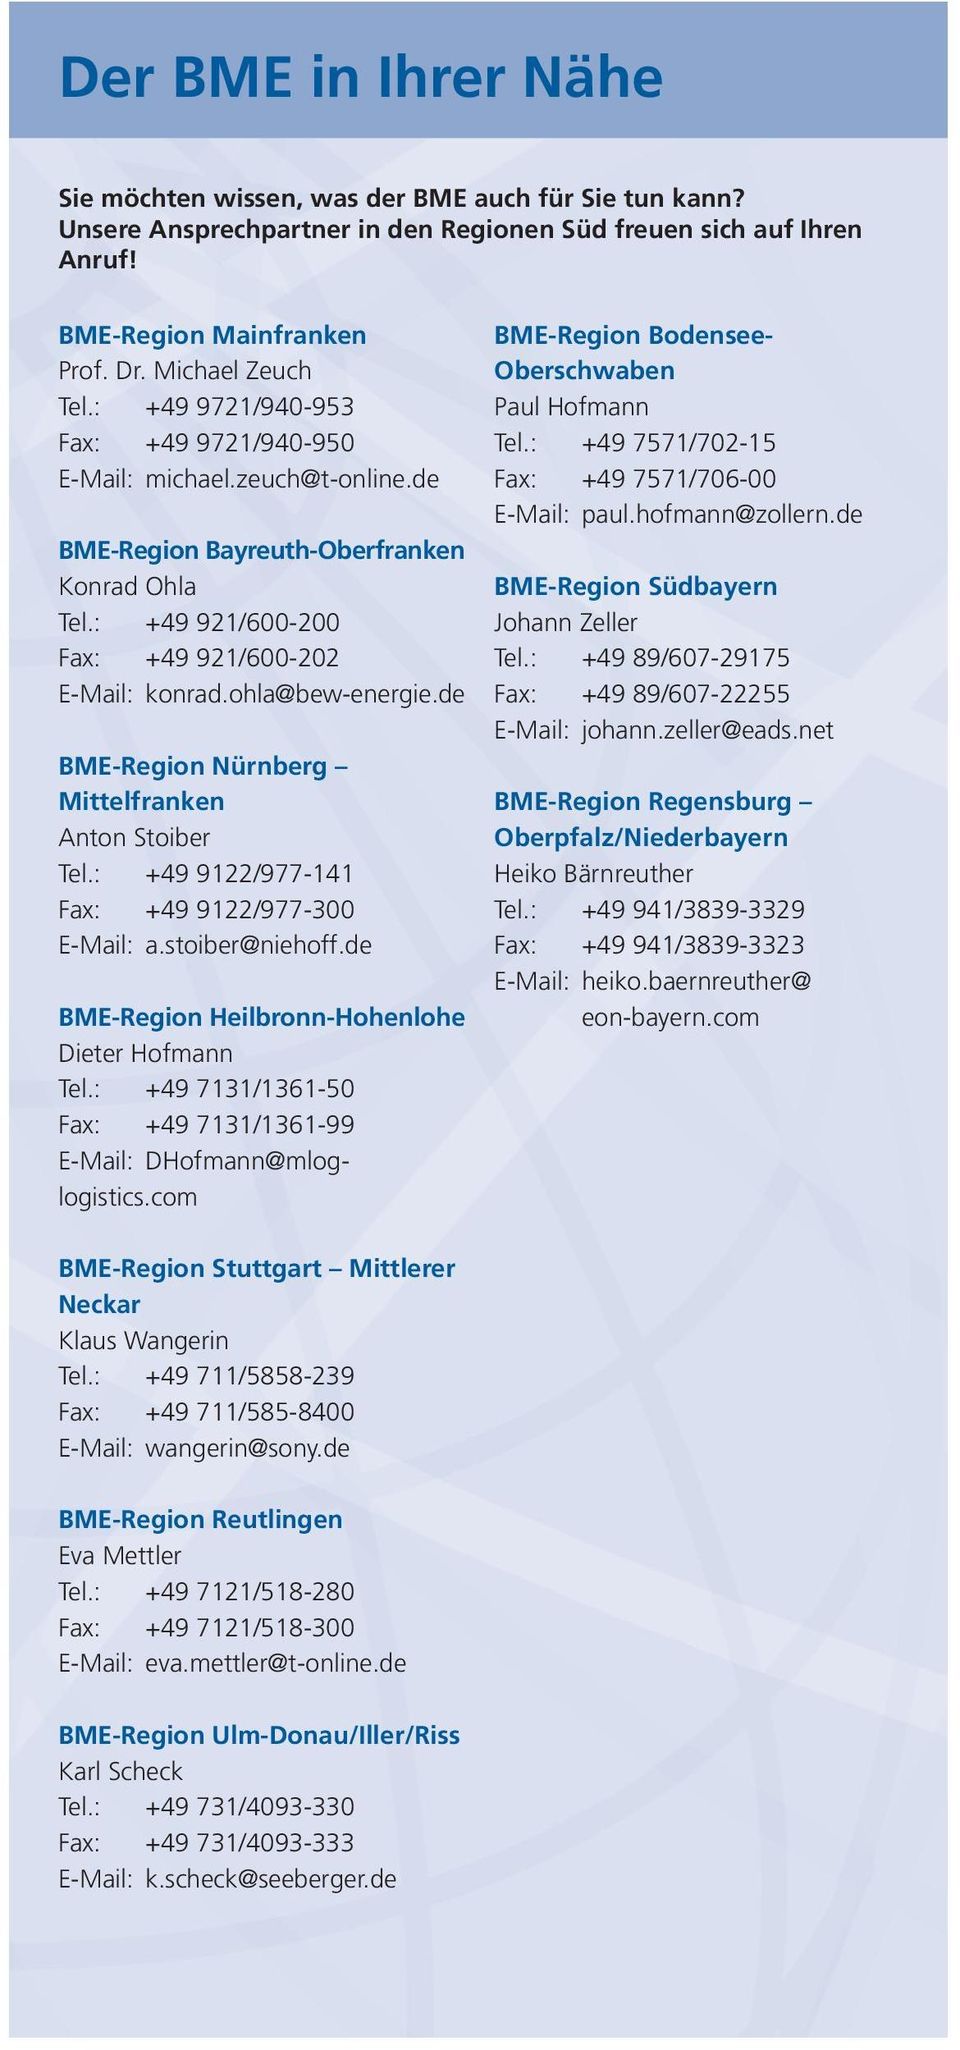 de BME-Region Nürnberg Mittelfranken Anton Stoiber Tel.: +49 9122/977-141 Fax: +49 9122/977-300 E-Mail: a.stoiber@niehoff.de BME-Region Heilbronn-Hohenlohe Dieter Hofmann Tel.